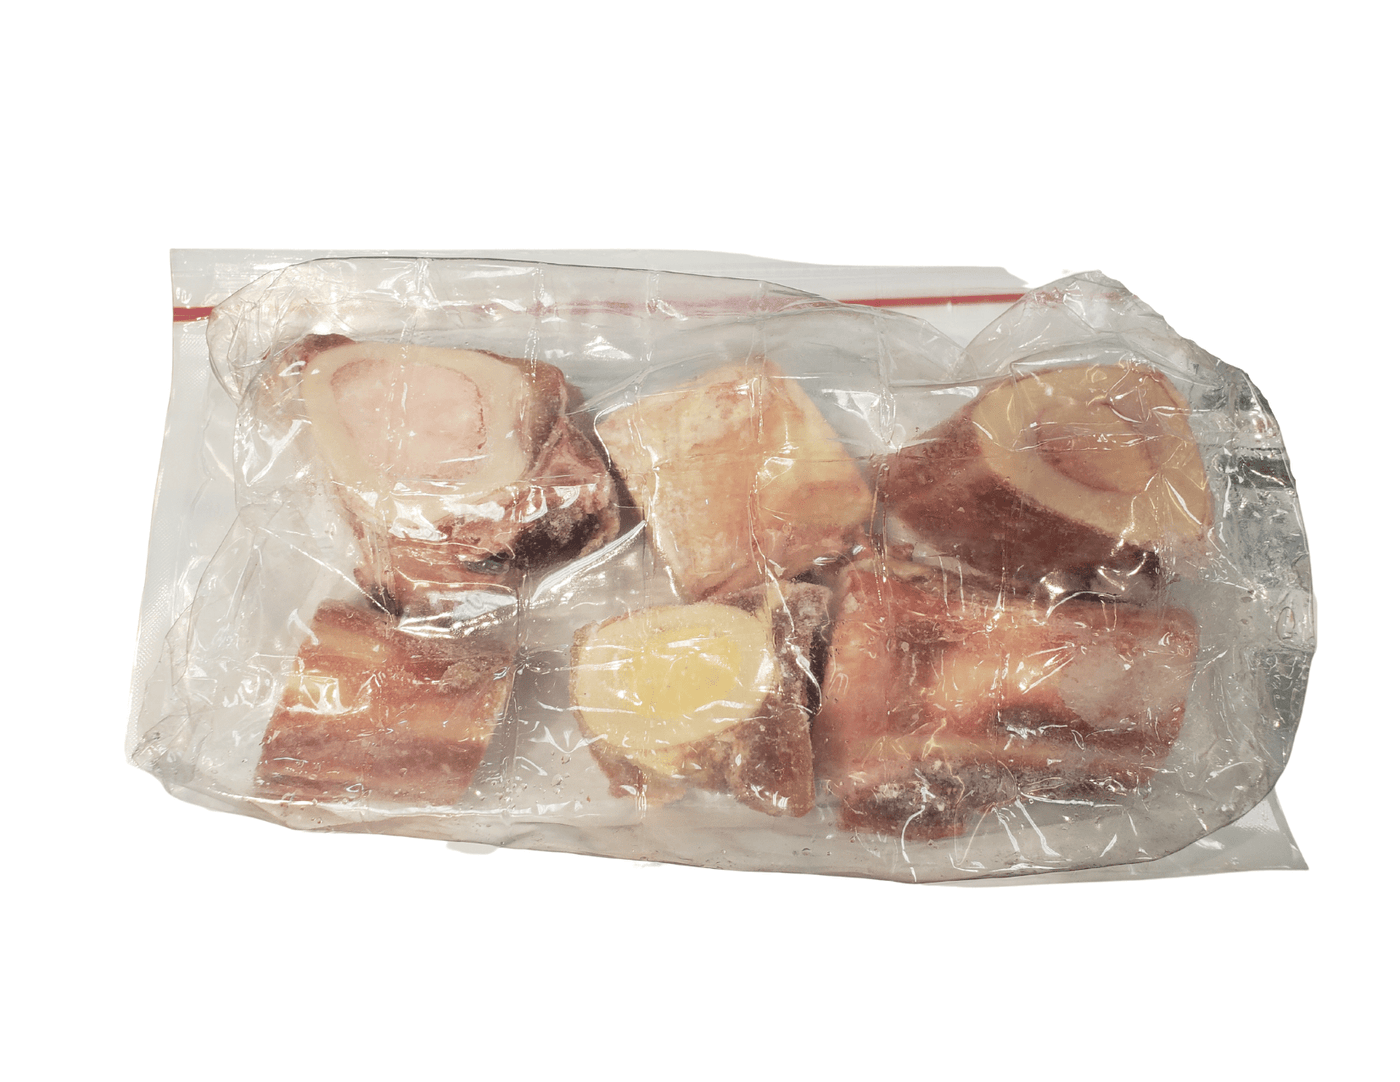 Raw Beef Marrow Bones Pack of 6 - Frozen Raw Dog Chews - Primal Pet Foods